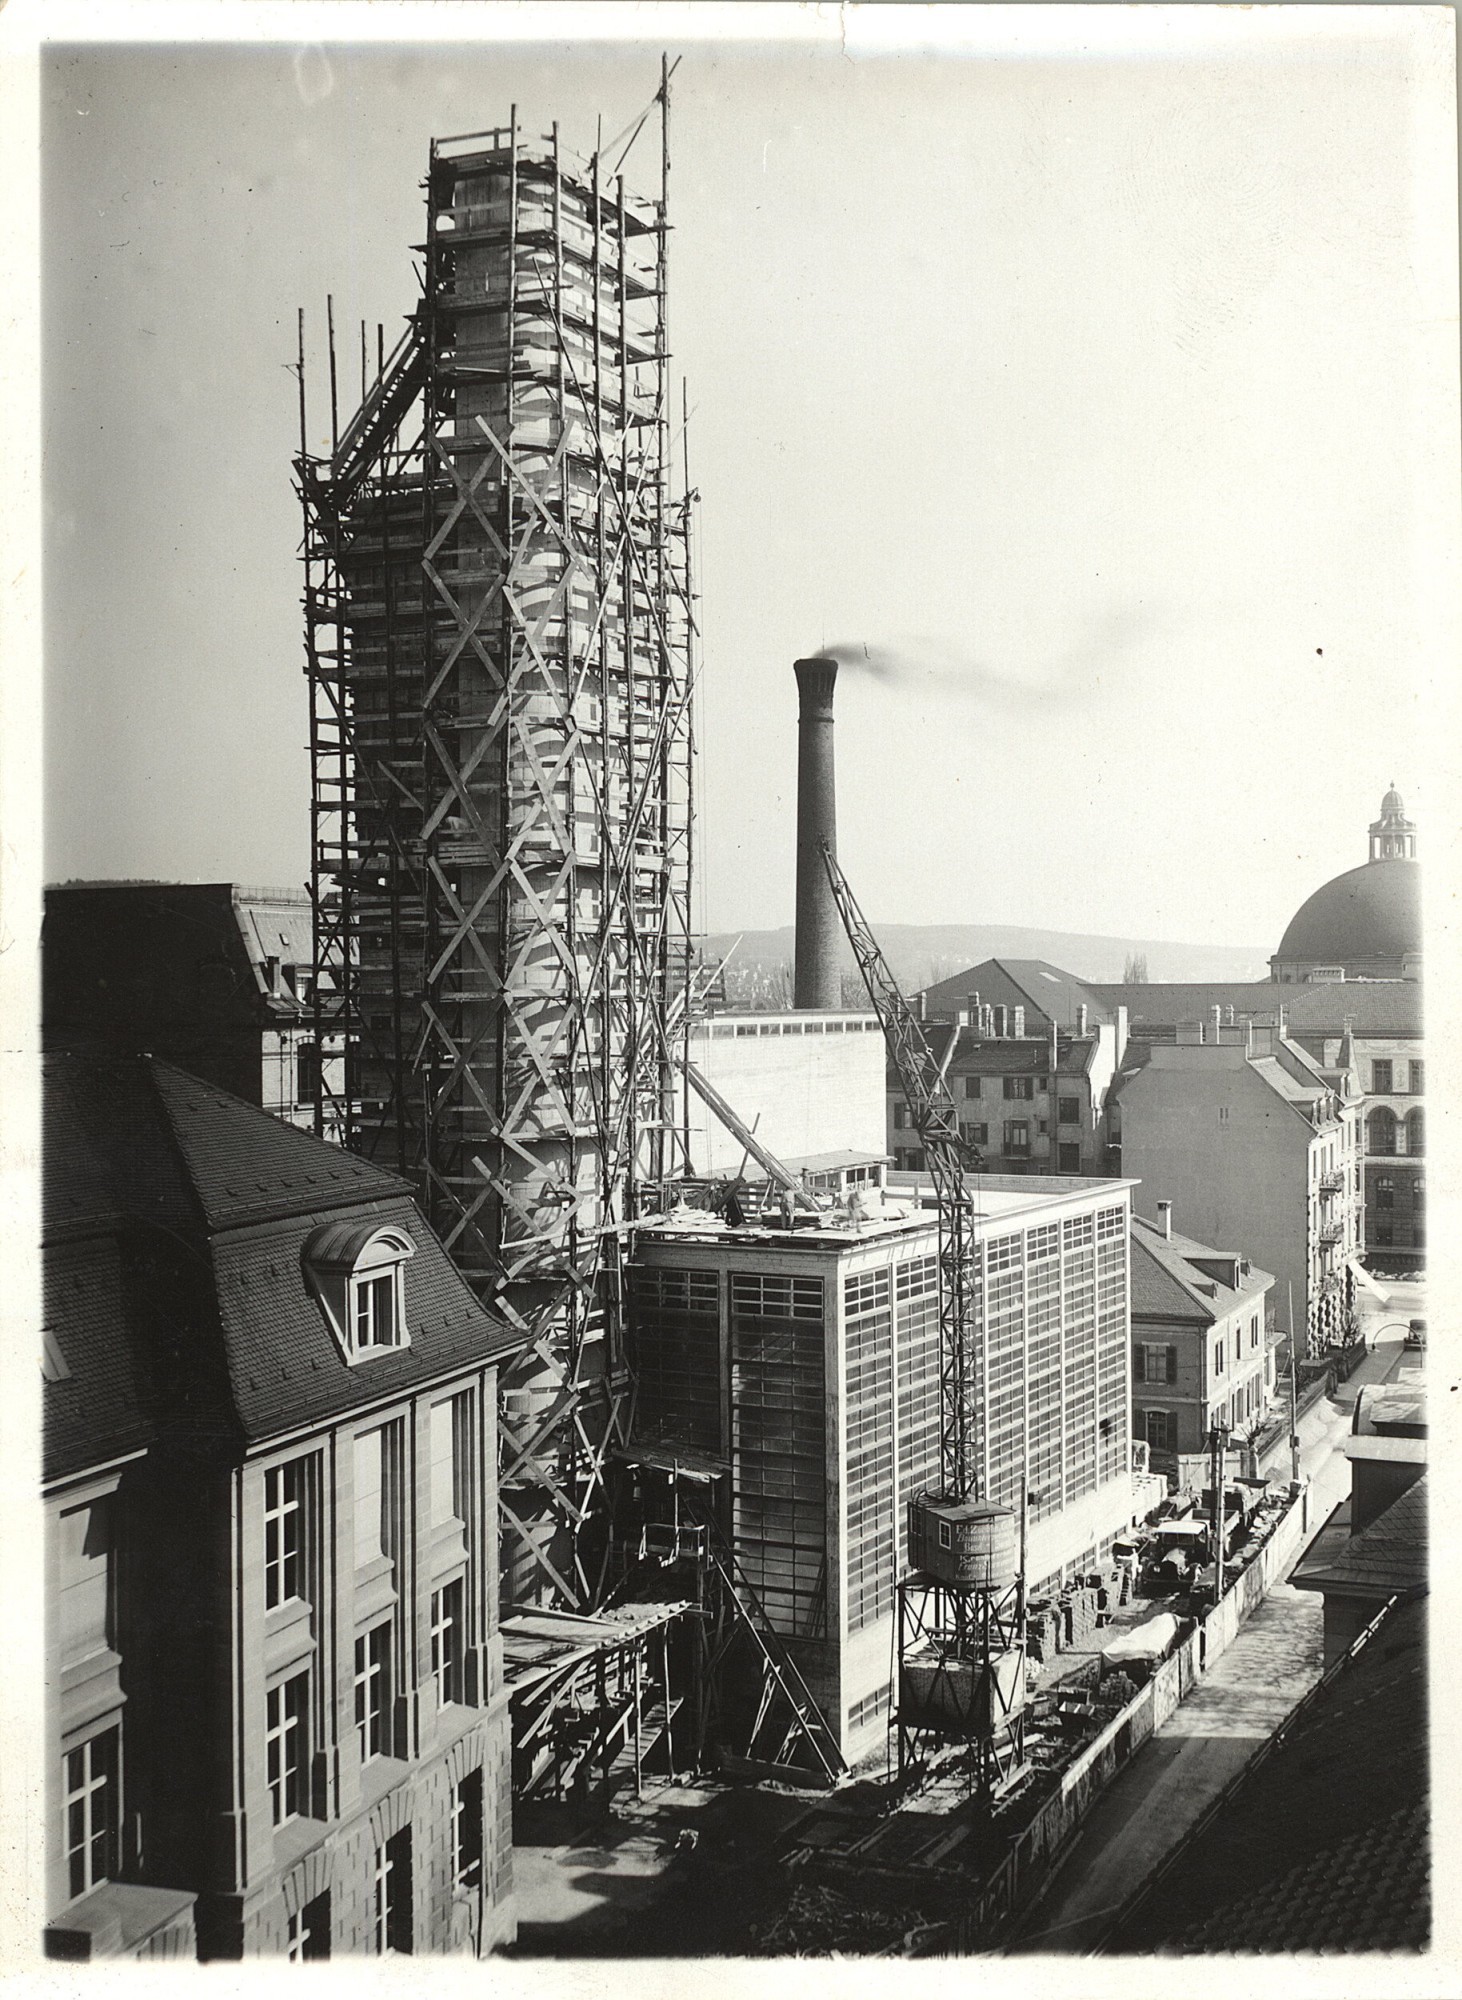 Fernwärmekamin Heizkraftwerk ETH Zürich 1934